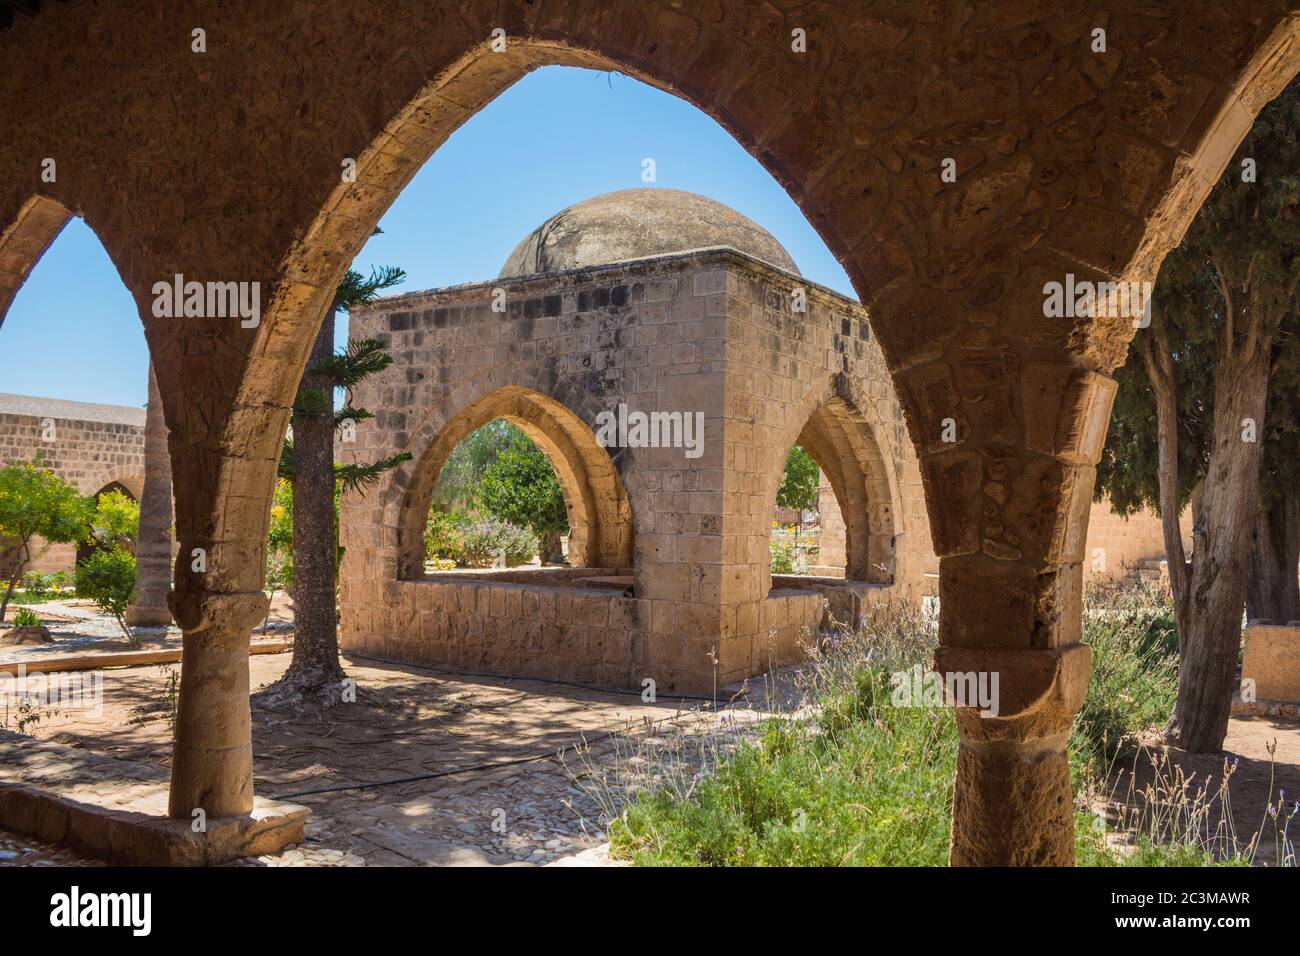 Arco nel monastero di Ayia Napa, Cipro. Il sito culturale più degno di visitare in città, l'edificio attuale risale a circa 1500. Foto Stock